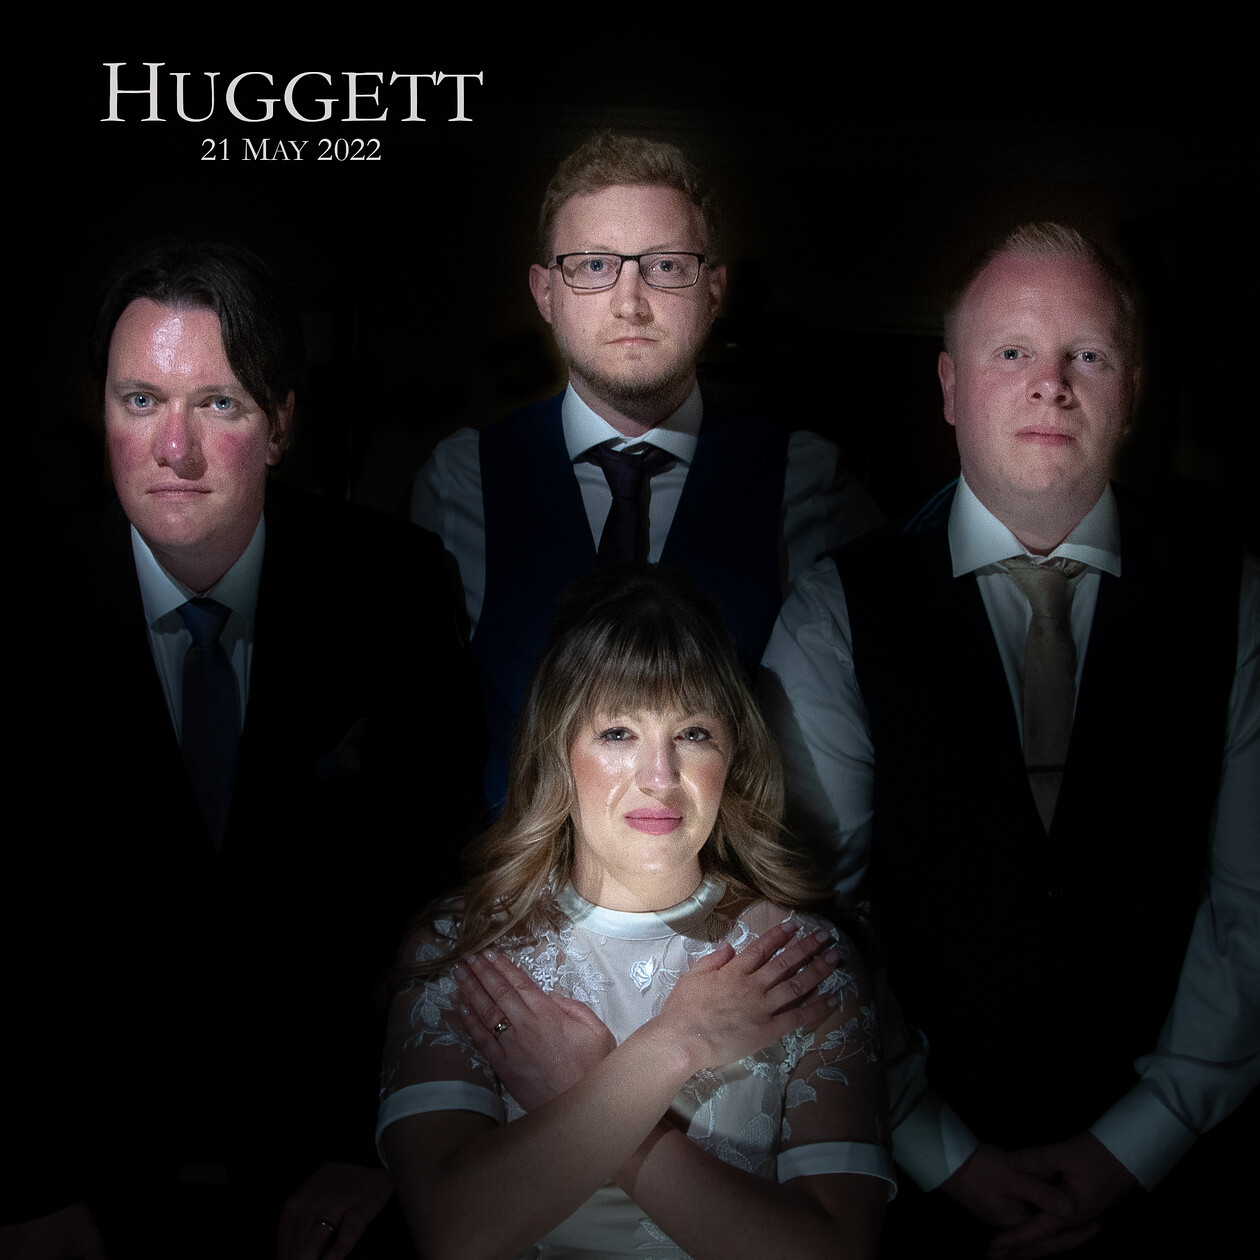 Mr-&-Mrs-Huggett-0318